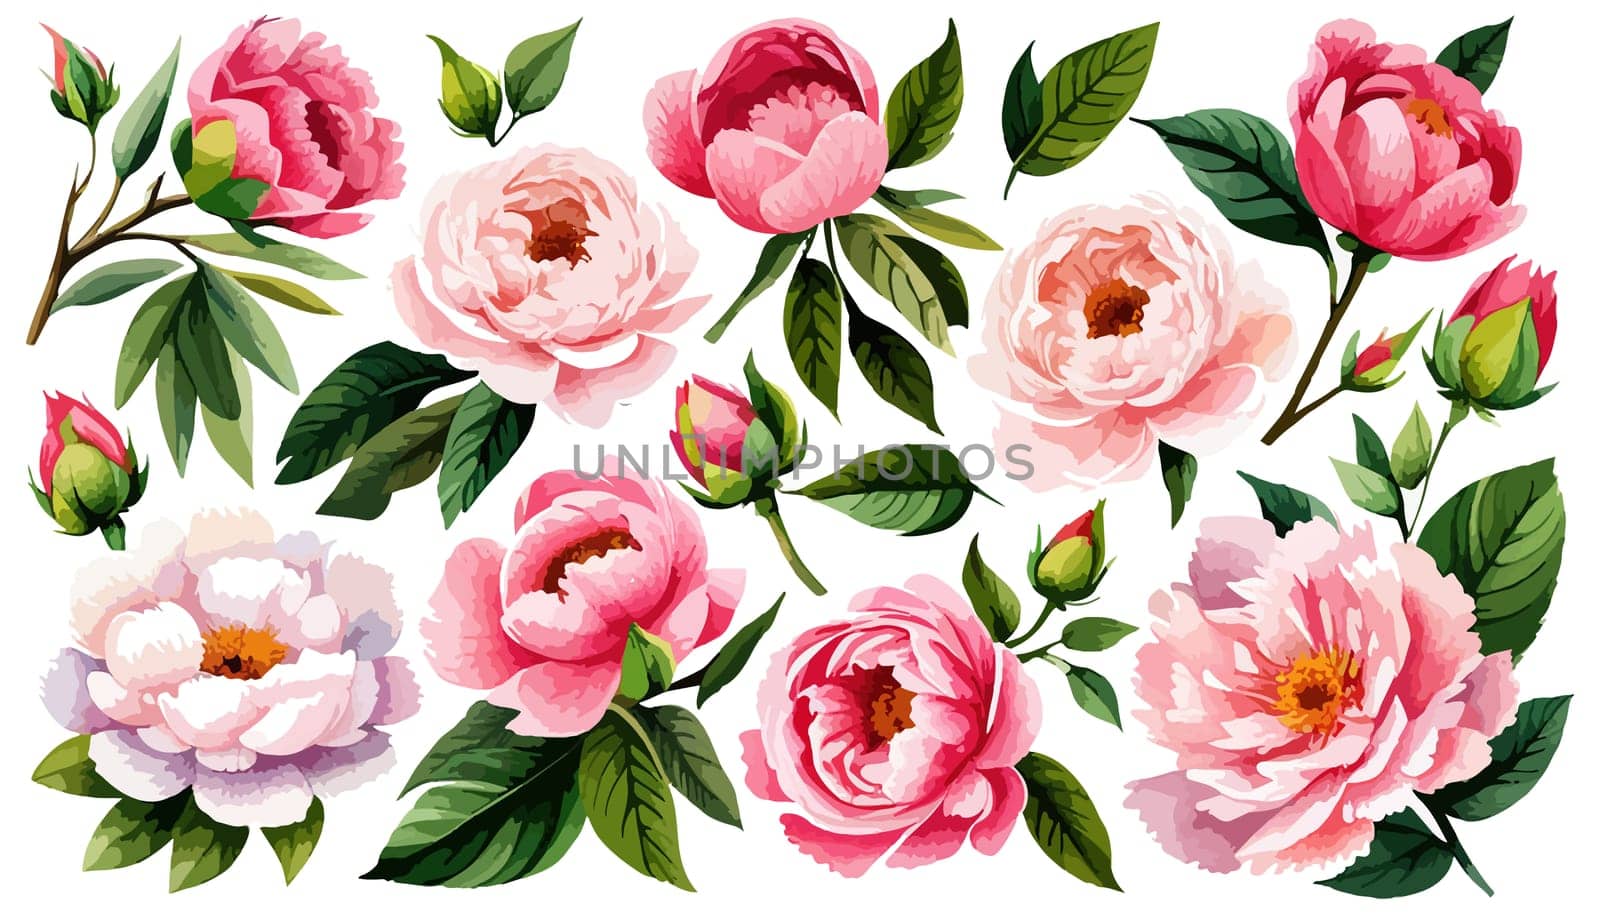 Watercolor floral set. Pink peonies flower, green leaves individual elements by EkaterinaPereslavtseva